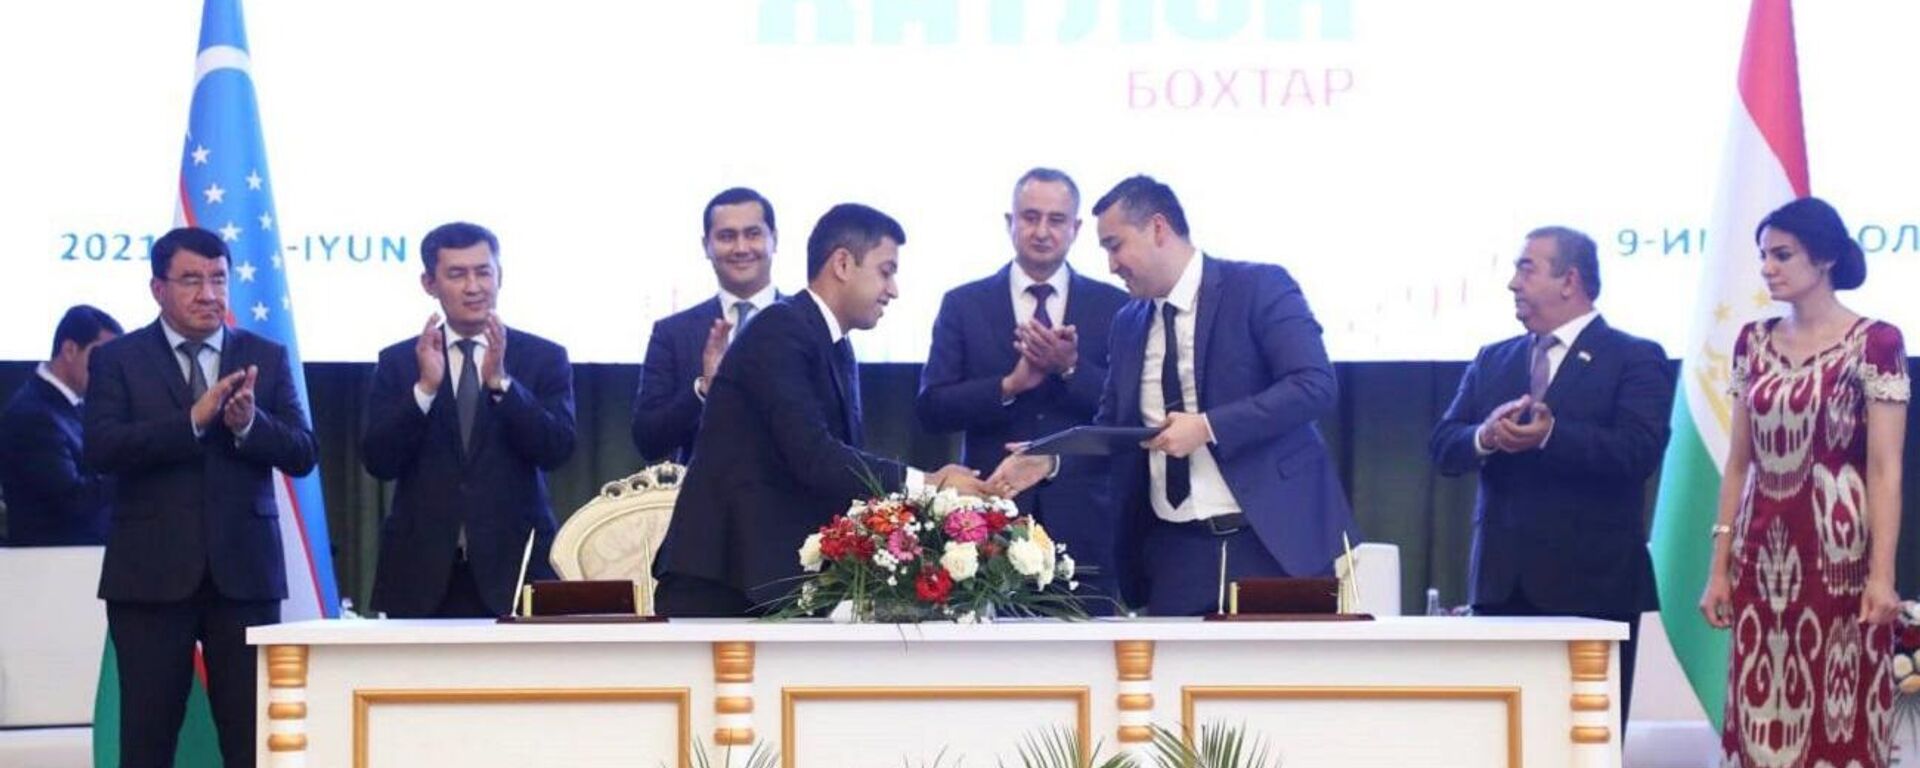 В Таджикистане состоялся 1-й Узбекско-таджикский межрегиональный инвестиционный форум - Sputnik Ўзбекистон, 1920, 09.06.2021